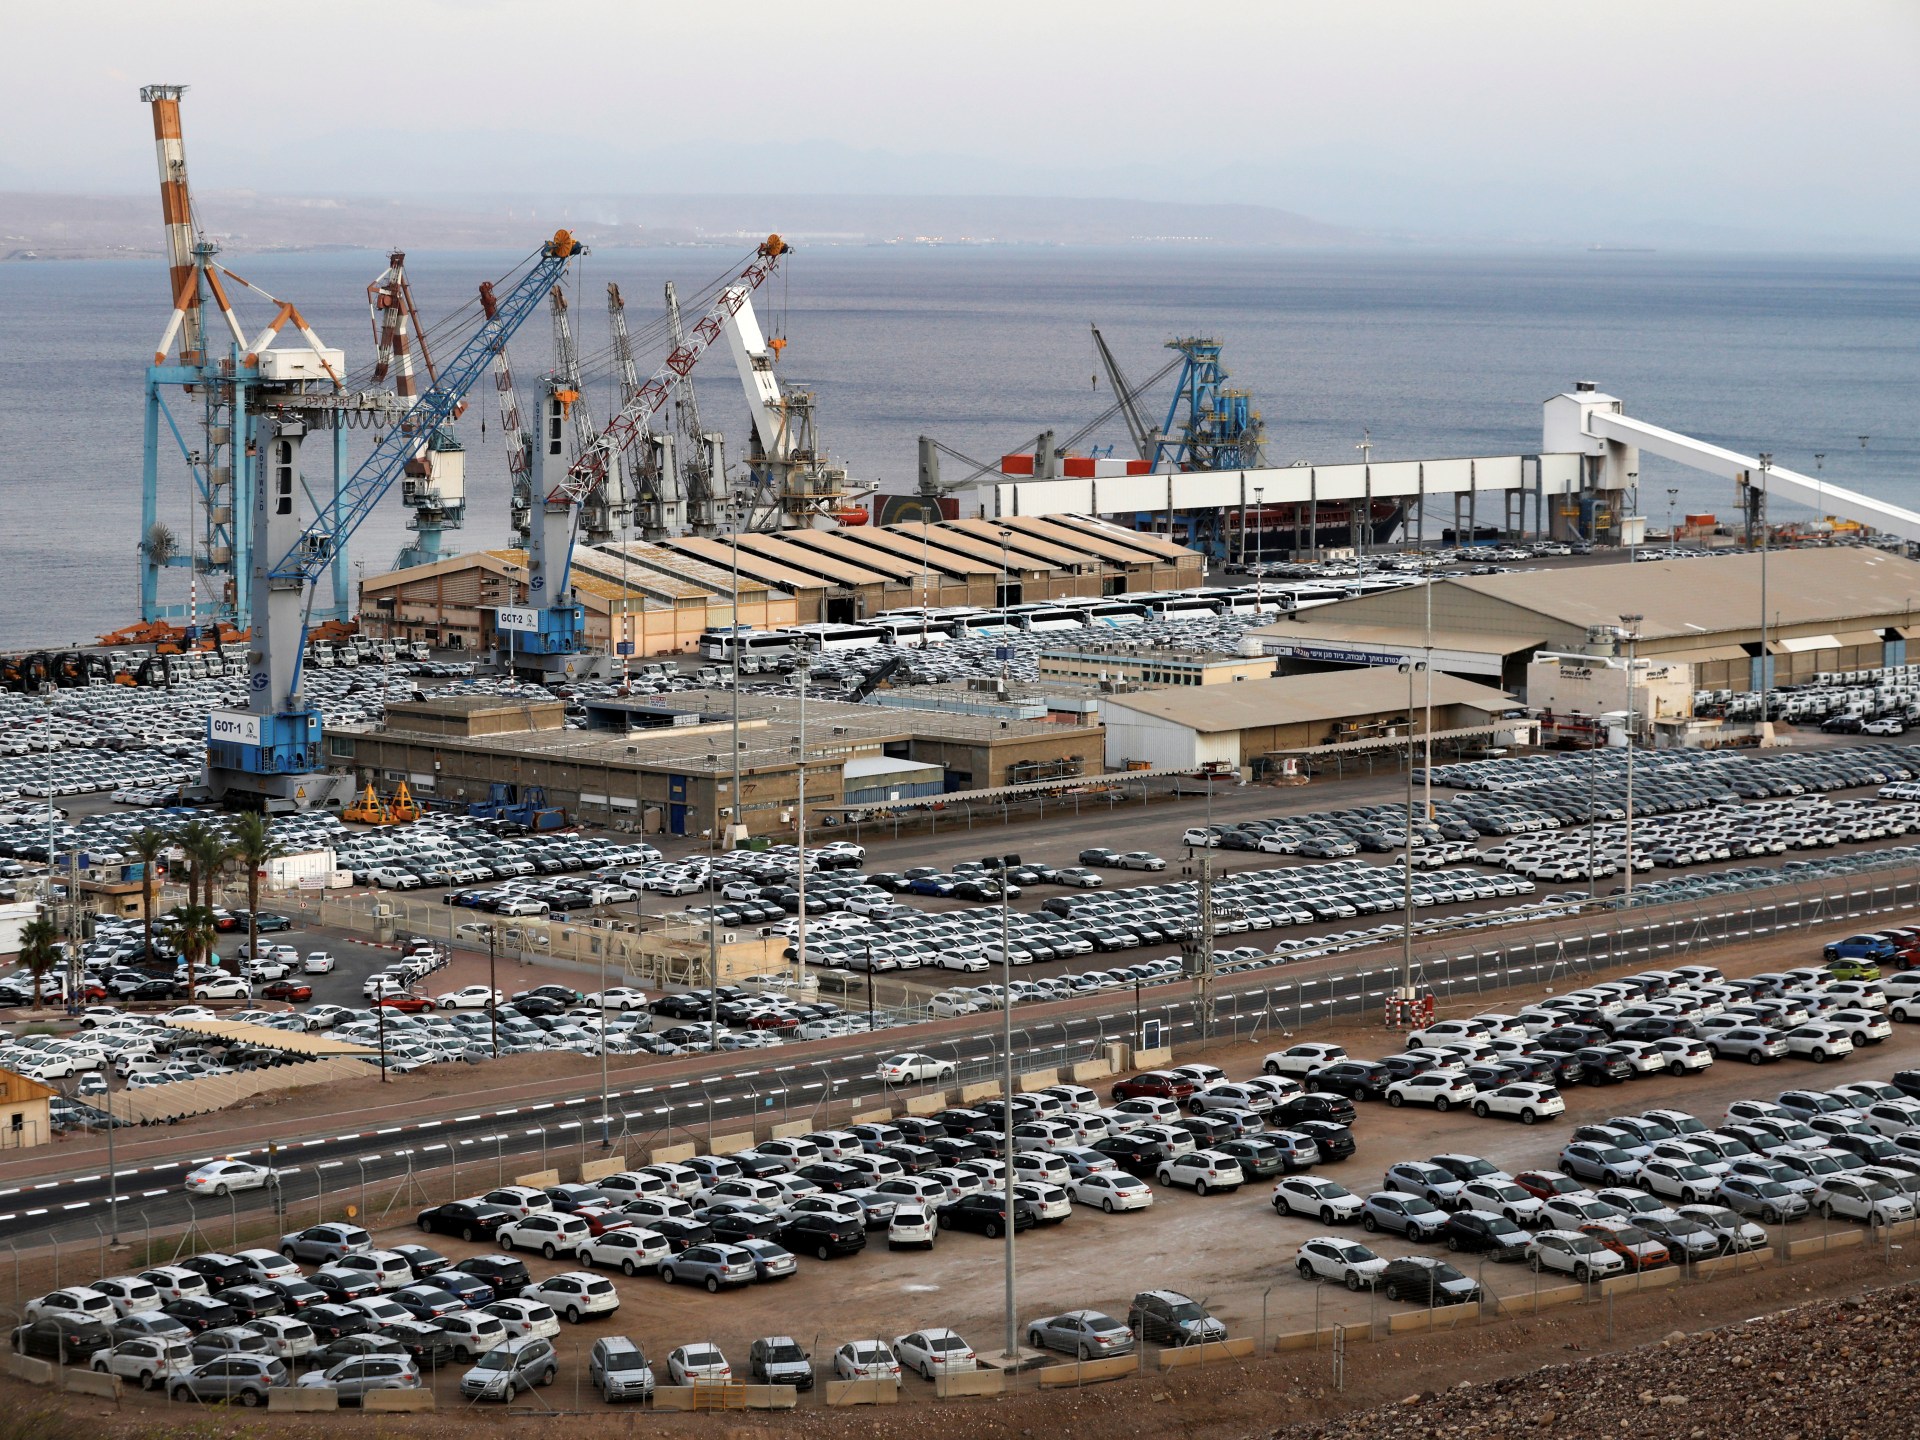 إسرائيل تتوقع ارتفاع أسعار السيارات مع تعطّل ميناء إيلات | اقتصاد – البوكس نيوز